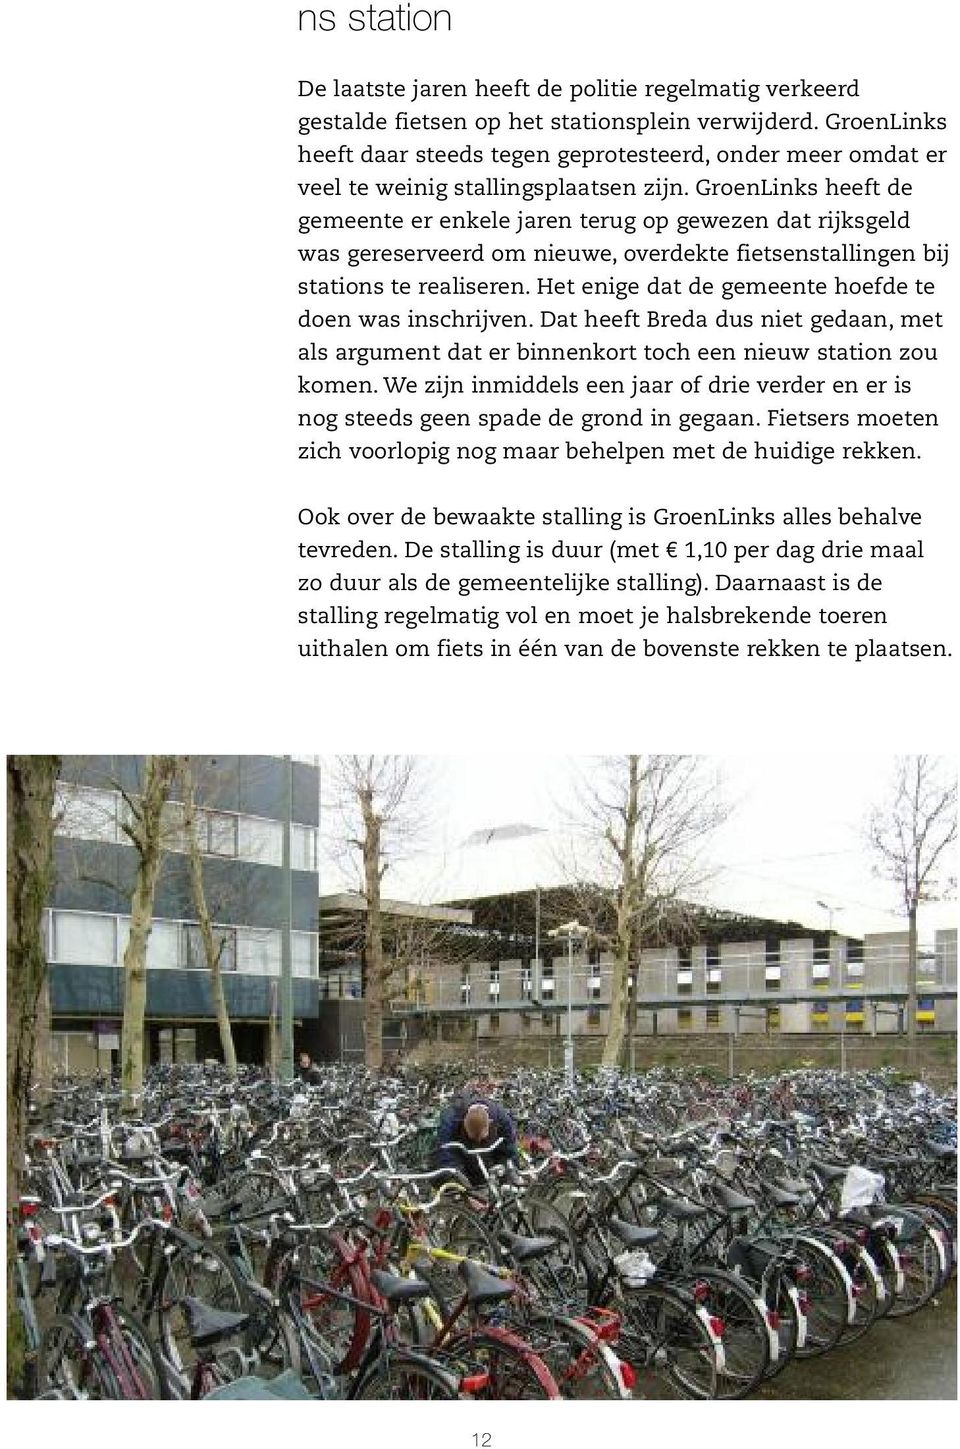 GroenLinks heeft de gemeente er enkele jaren terug op gewezen dat rijksgeld was gereserveerd om nieuwe, overdekte fietsenstallingen bij stations te realiseren.